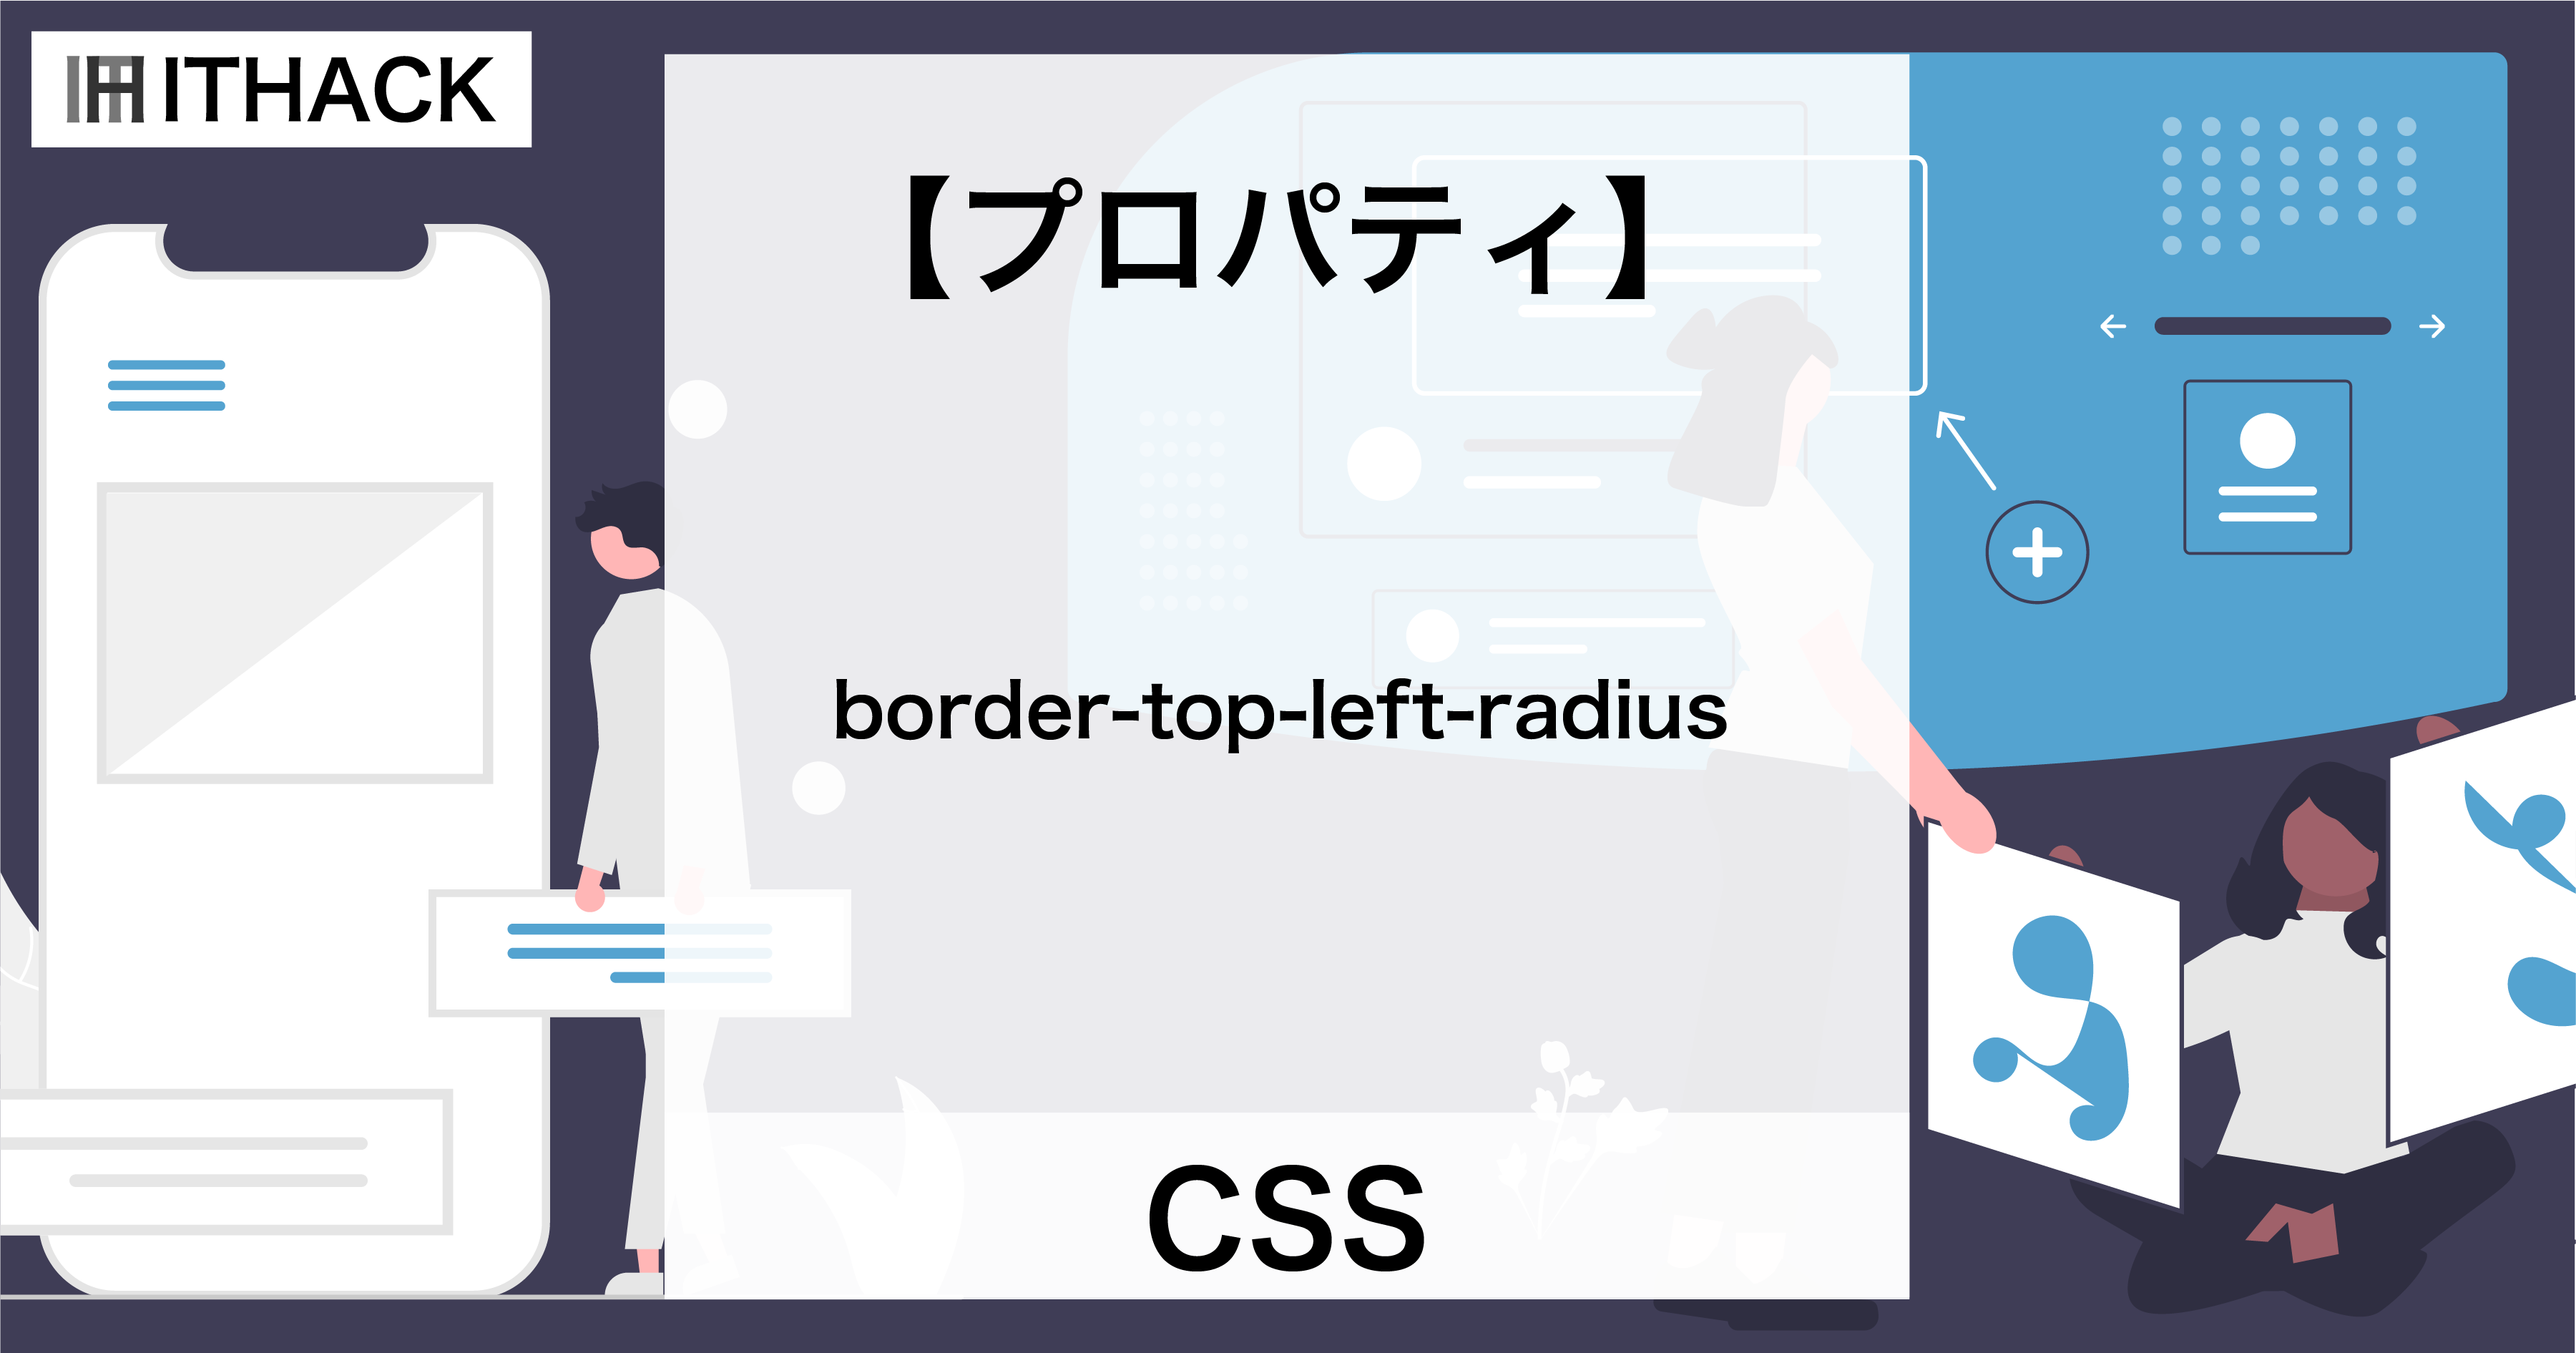 【CSS】border-top-left-radius - 左上角の曲線